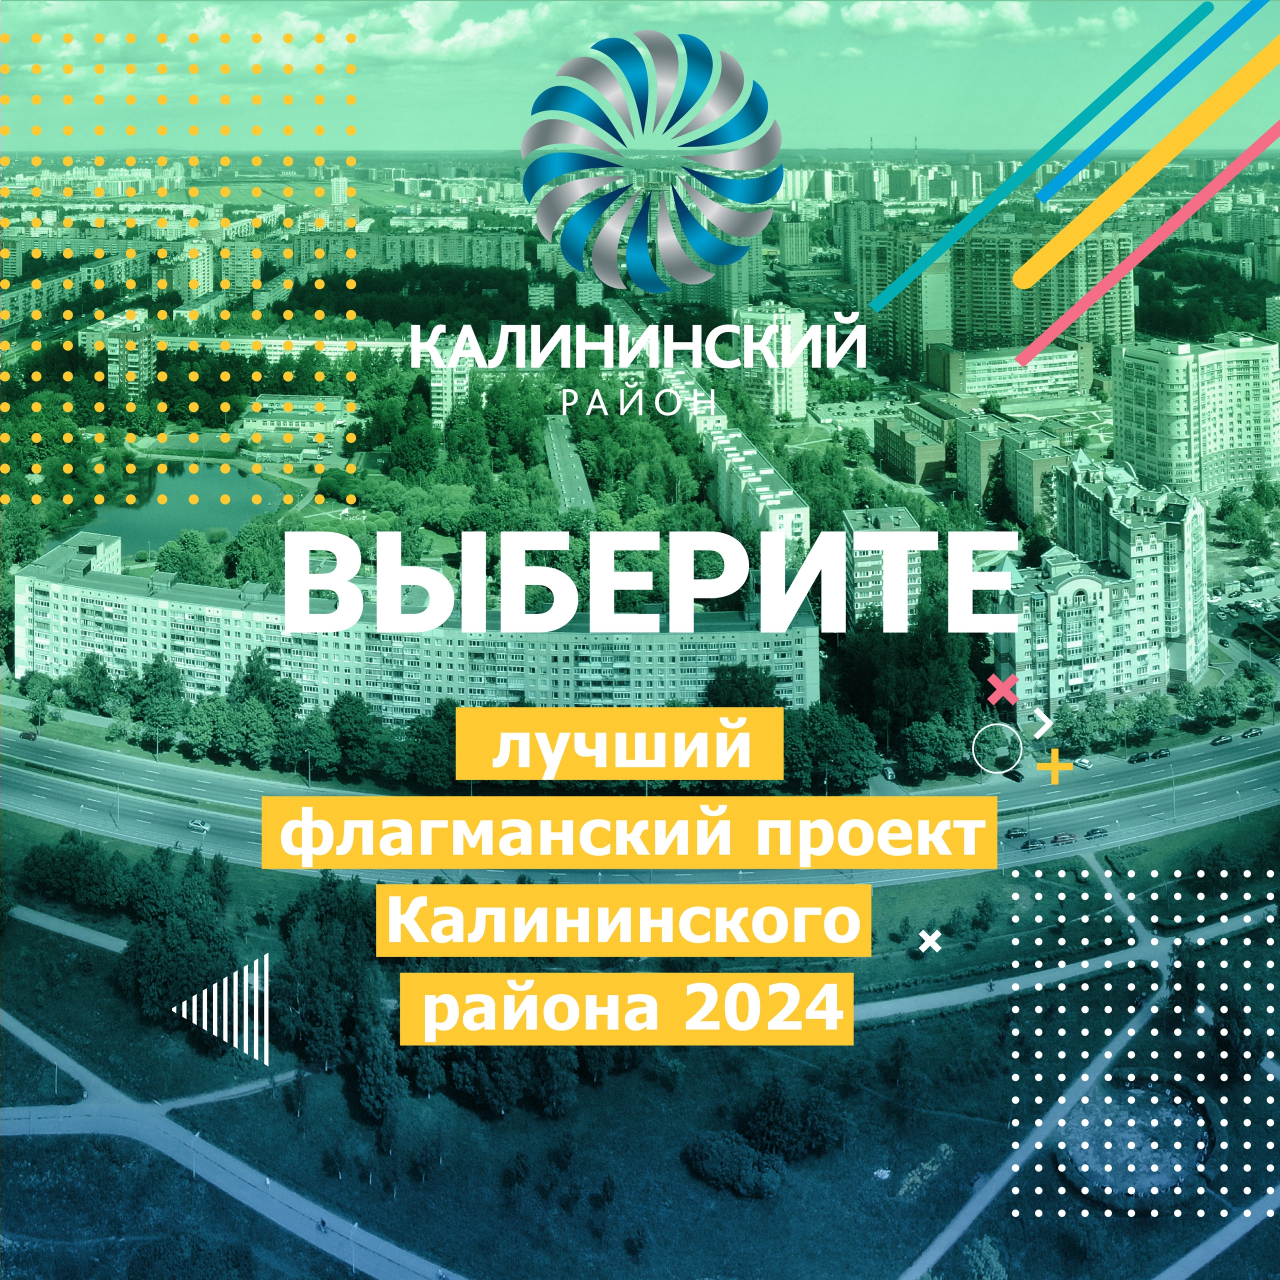 Лучший флагманский проект Калининского района 2024